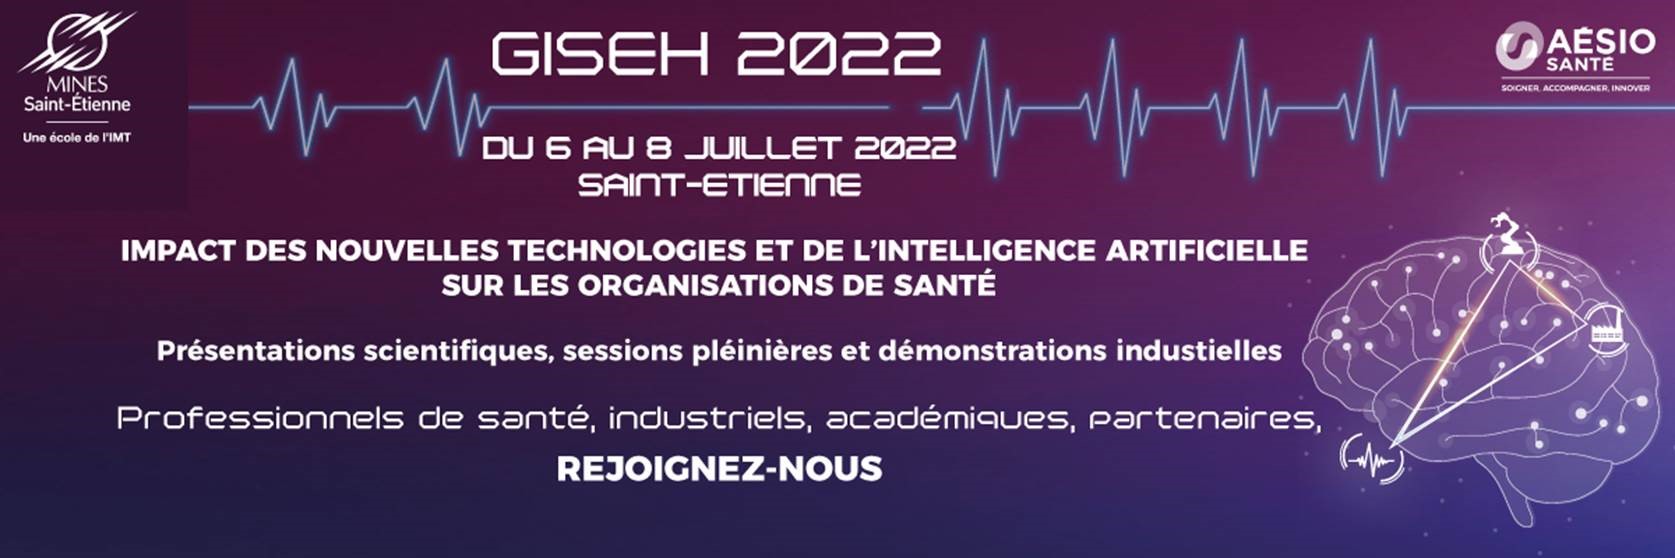 La Fondation de l’Avenir, partenaire de l’événement GISEH 2022